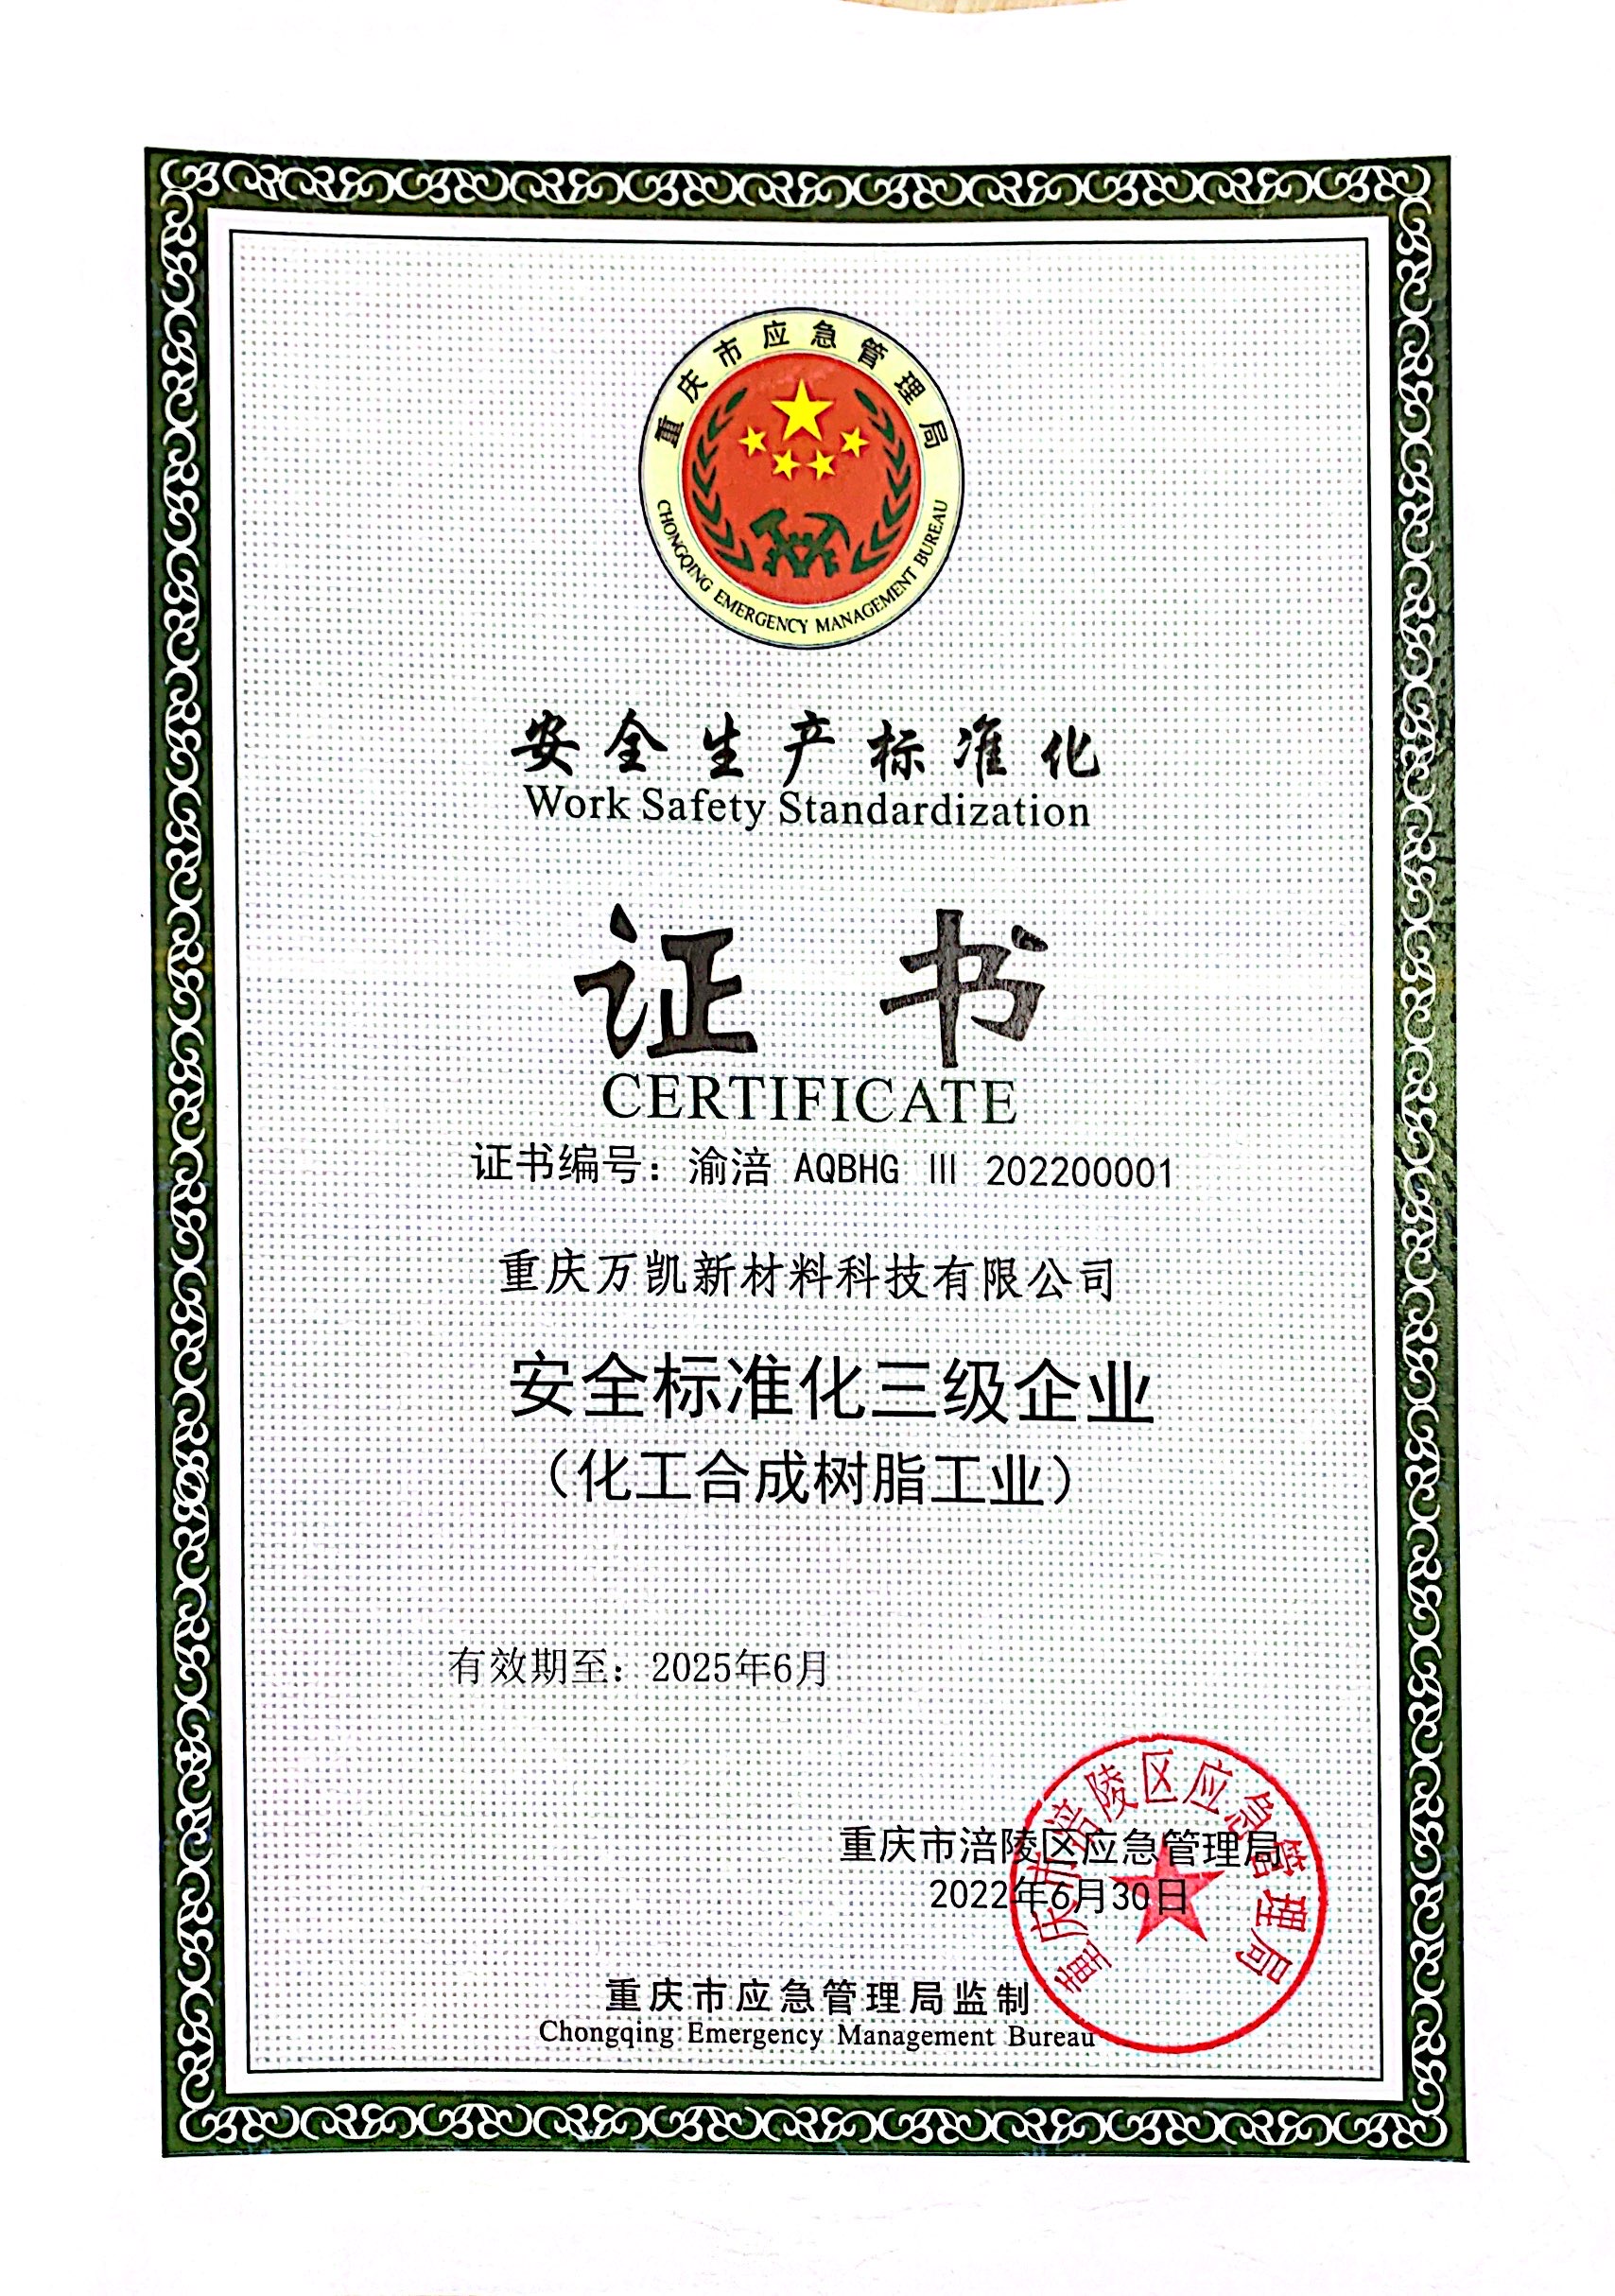 12.重庆万凯安全生产标准化证书